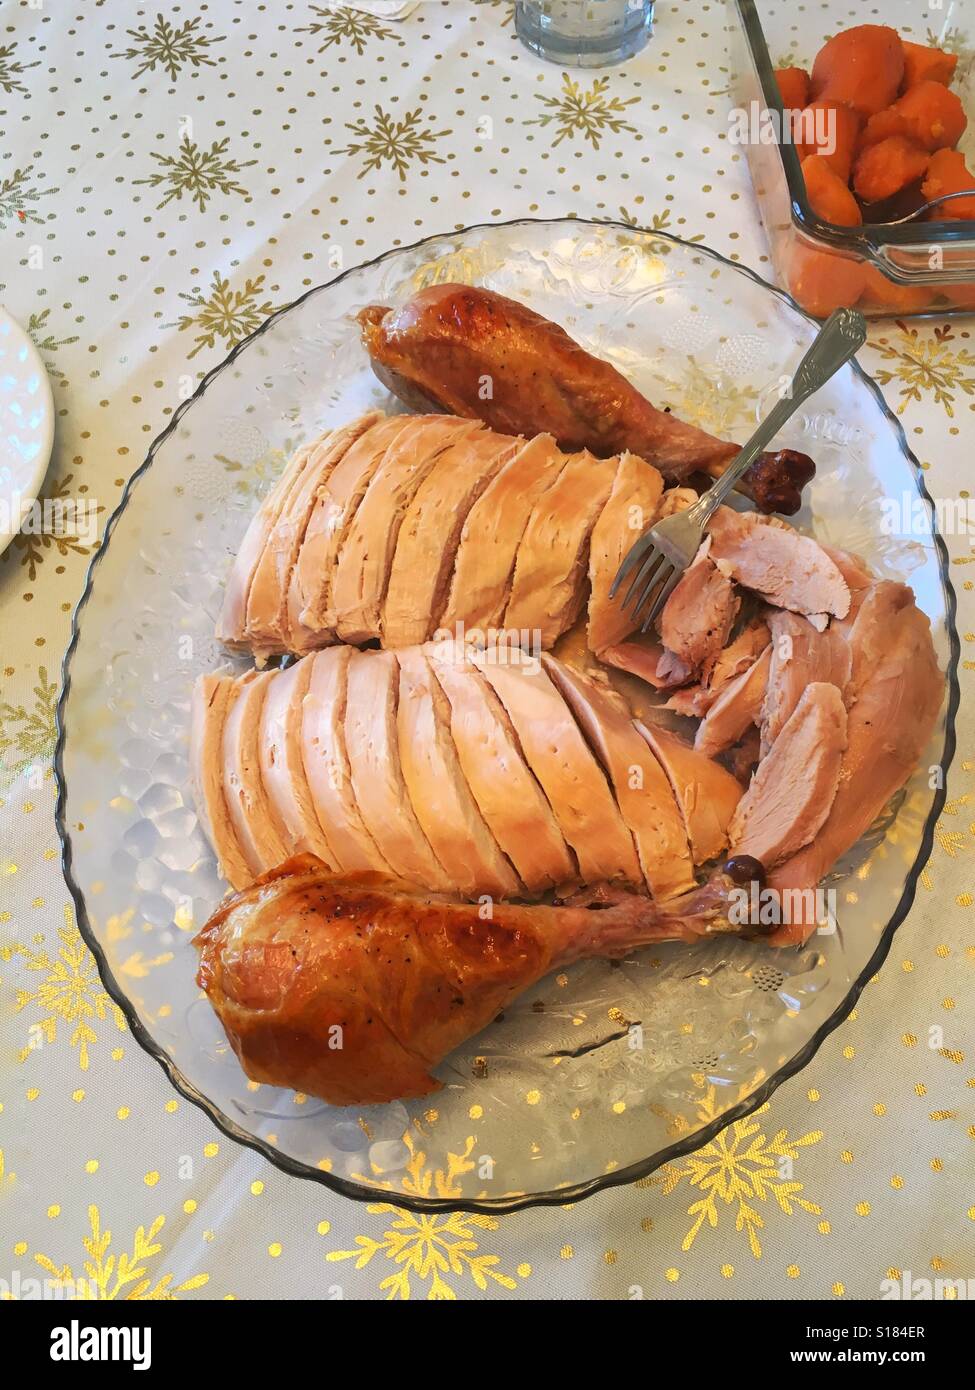 Roast turkey on platter Stock Photo